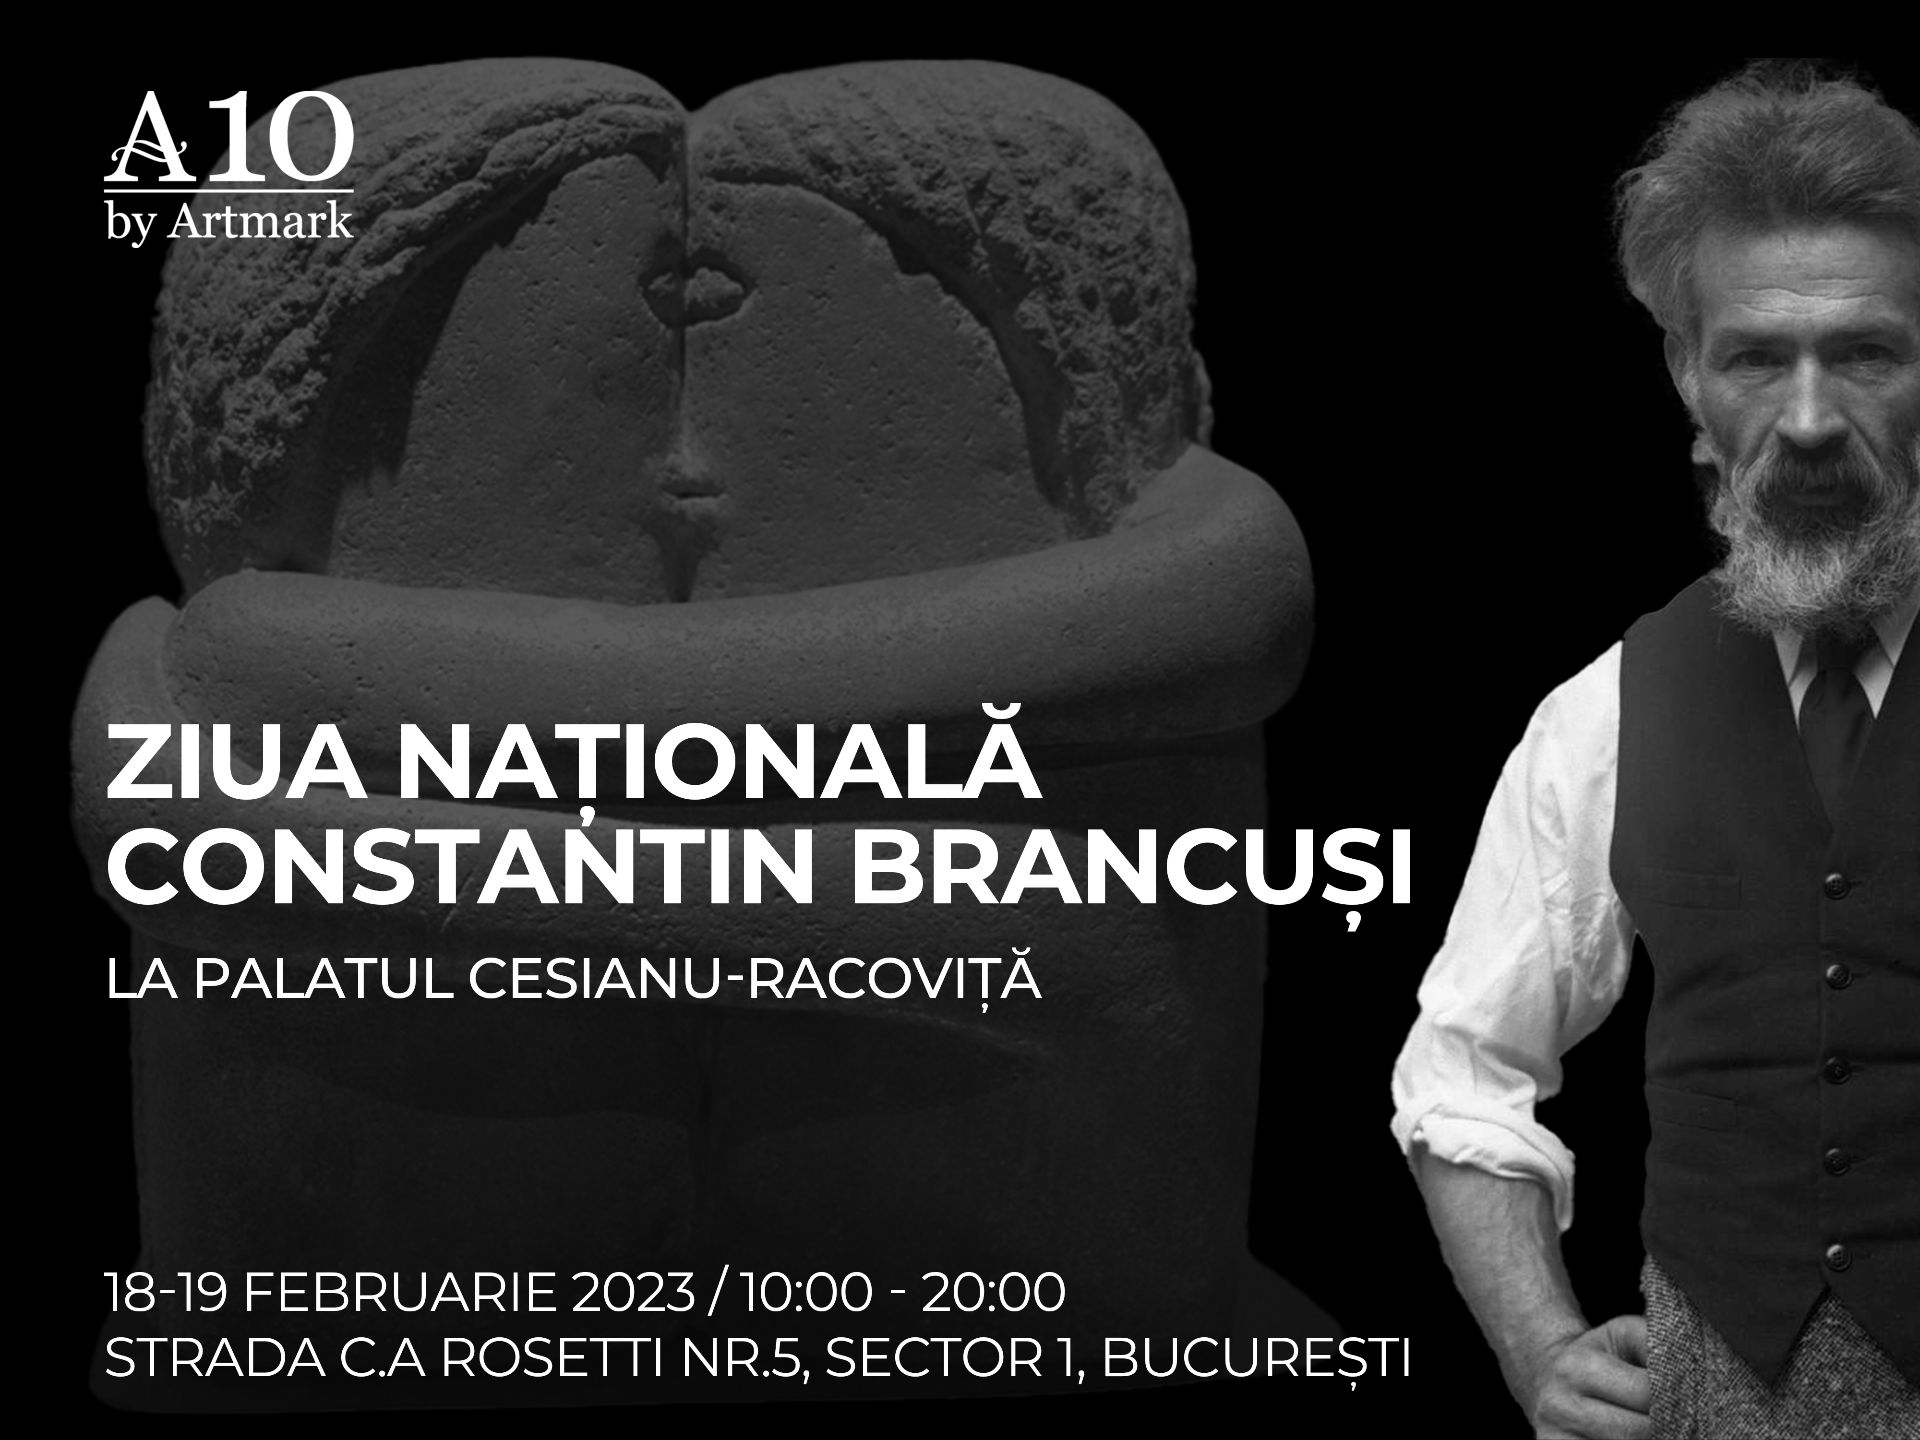 Ziua Națională Constantin Brâncuși, marcată și la Palatul Cesianu-Racoviță